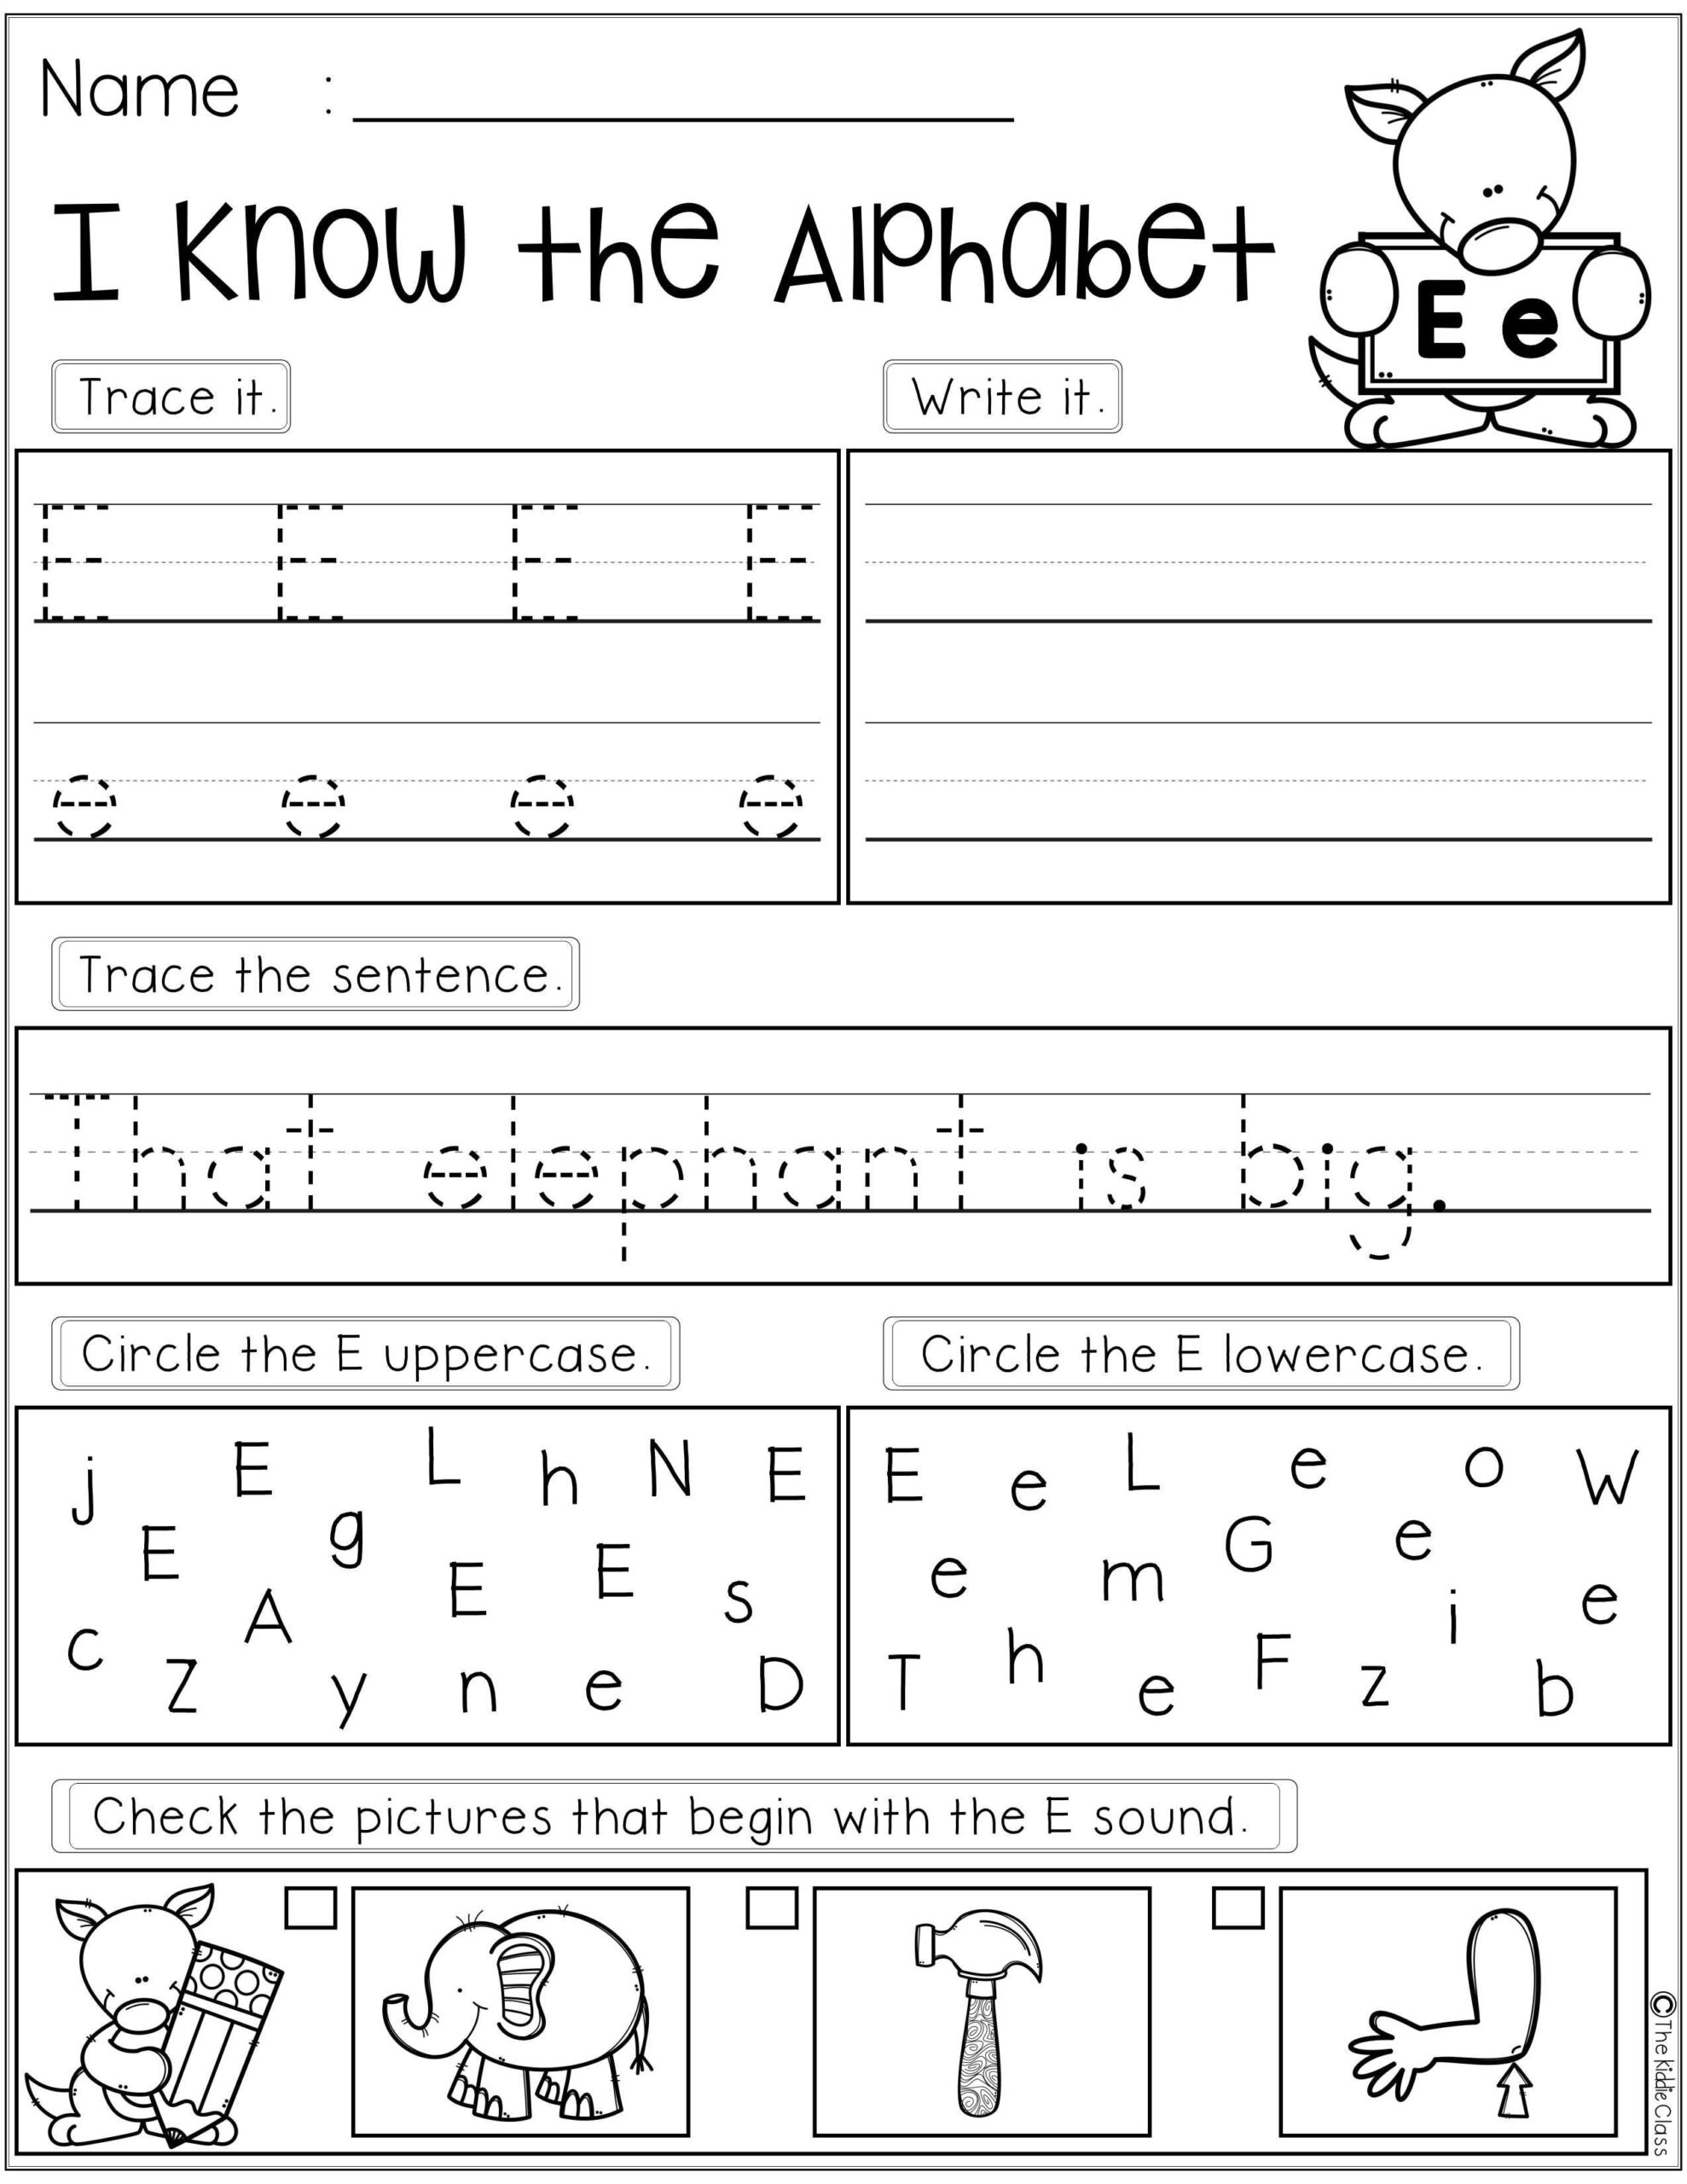 alphabet-worksheet-for-grade-1-alphabet-tracing-worksheets